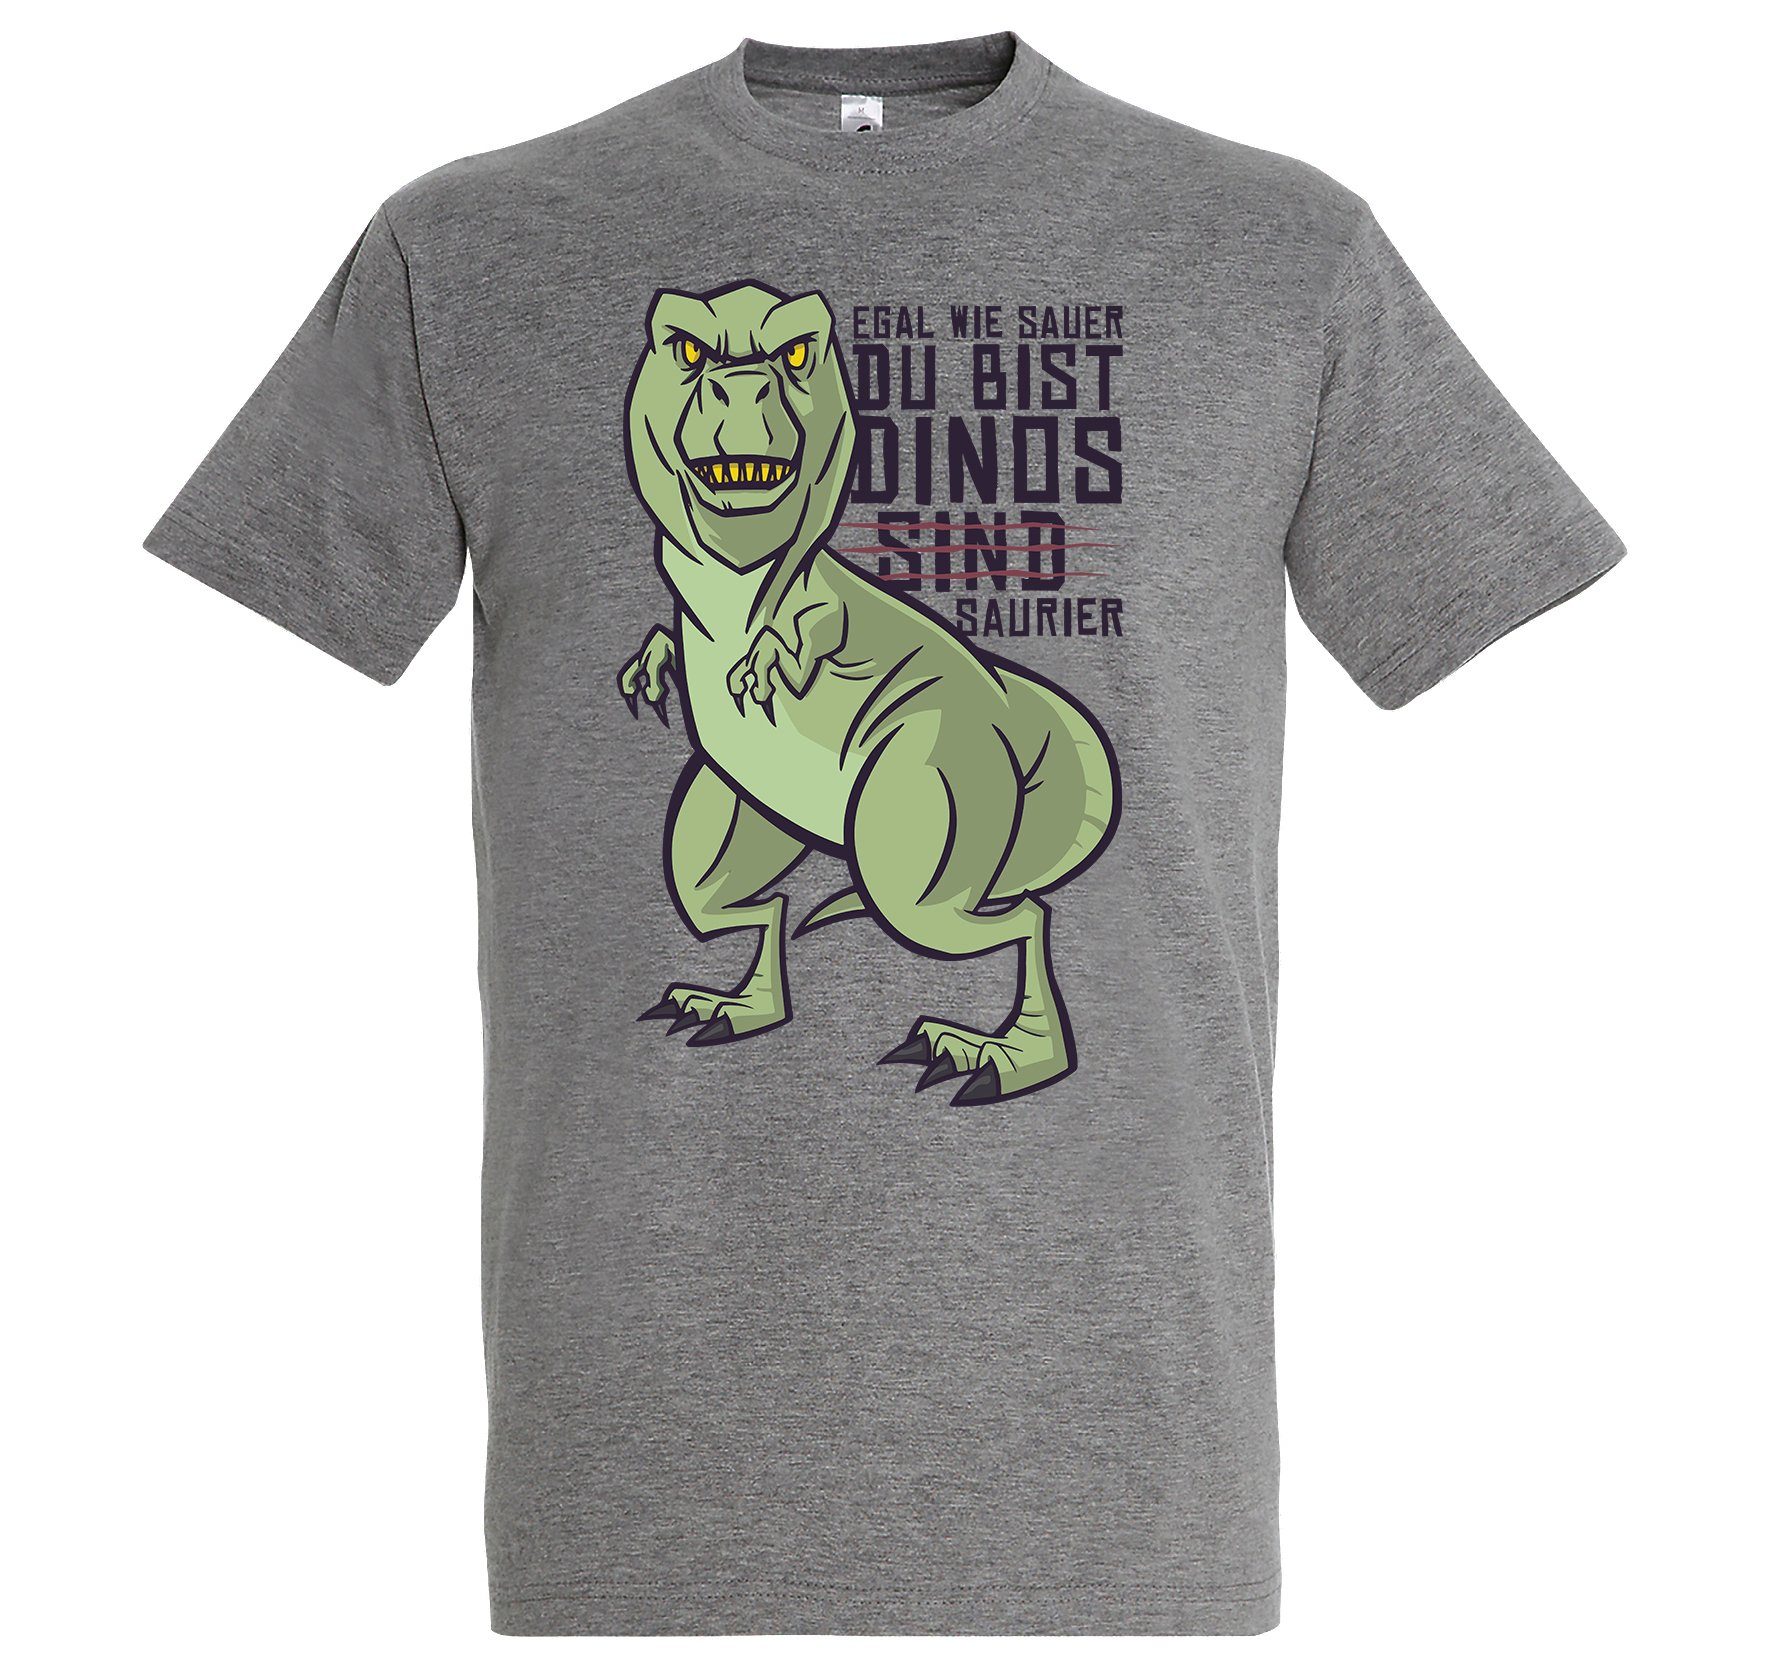 Youth Designz T-Shirt "Dinos Sind Saurier" Spruch Herren Shirt mit lustigem Frontprint Grau